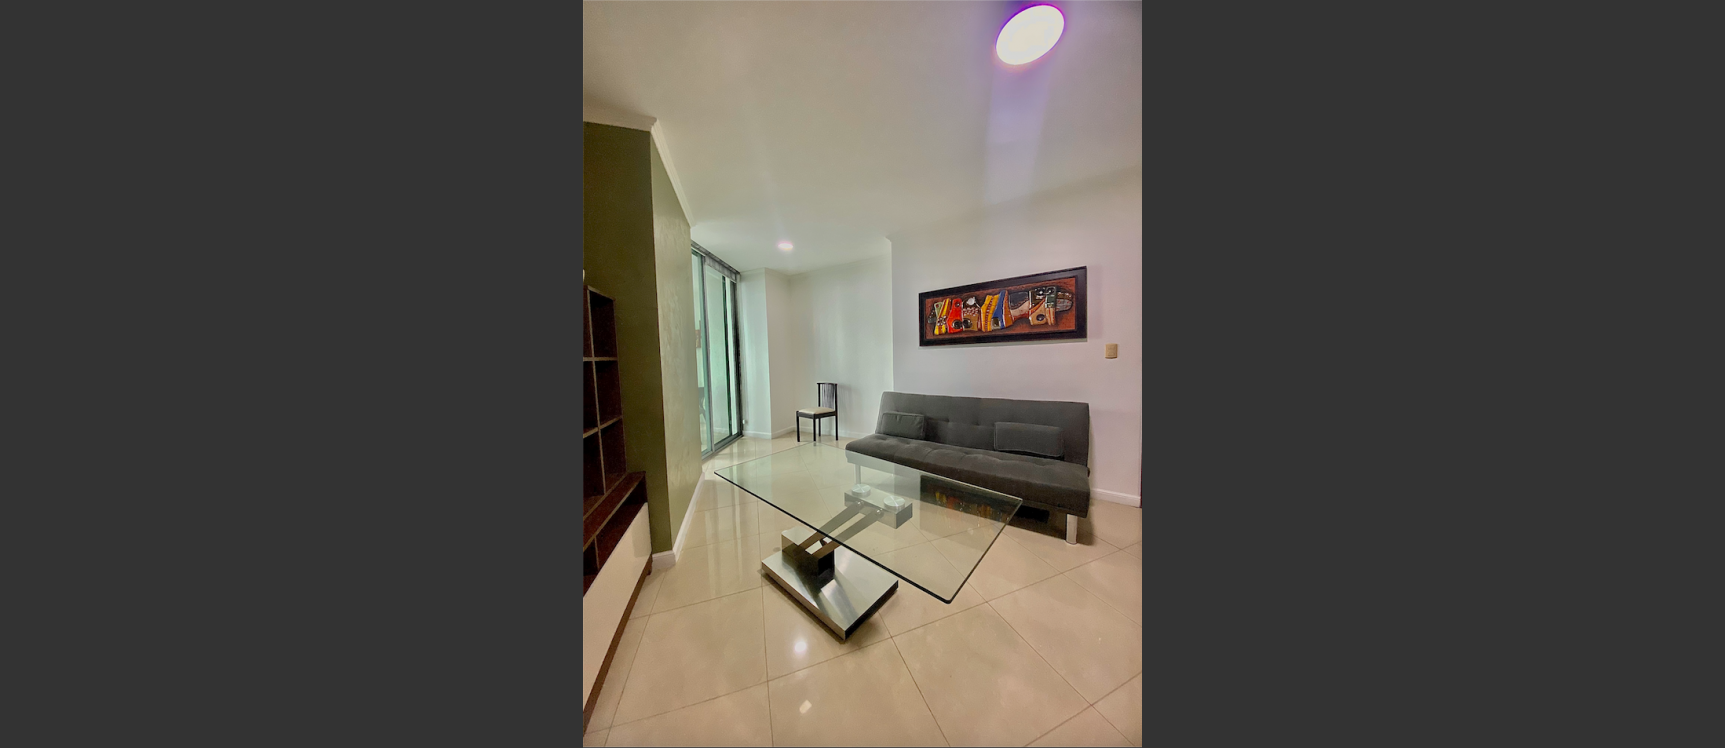 GeoBienes - Departamento en alquiler ubicado en Riverfront I, Puerto Santa Ana - Plusvalia Guayaquil Casas de venta y alquiler Inmobiliaria Ecuador